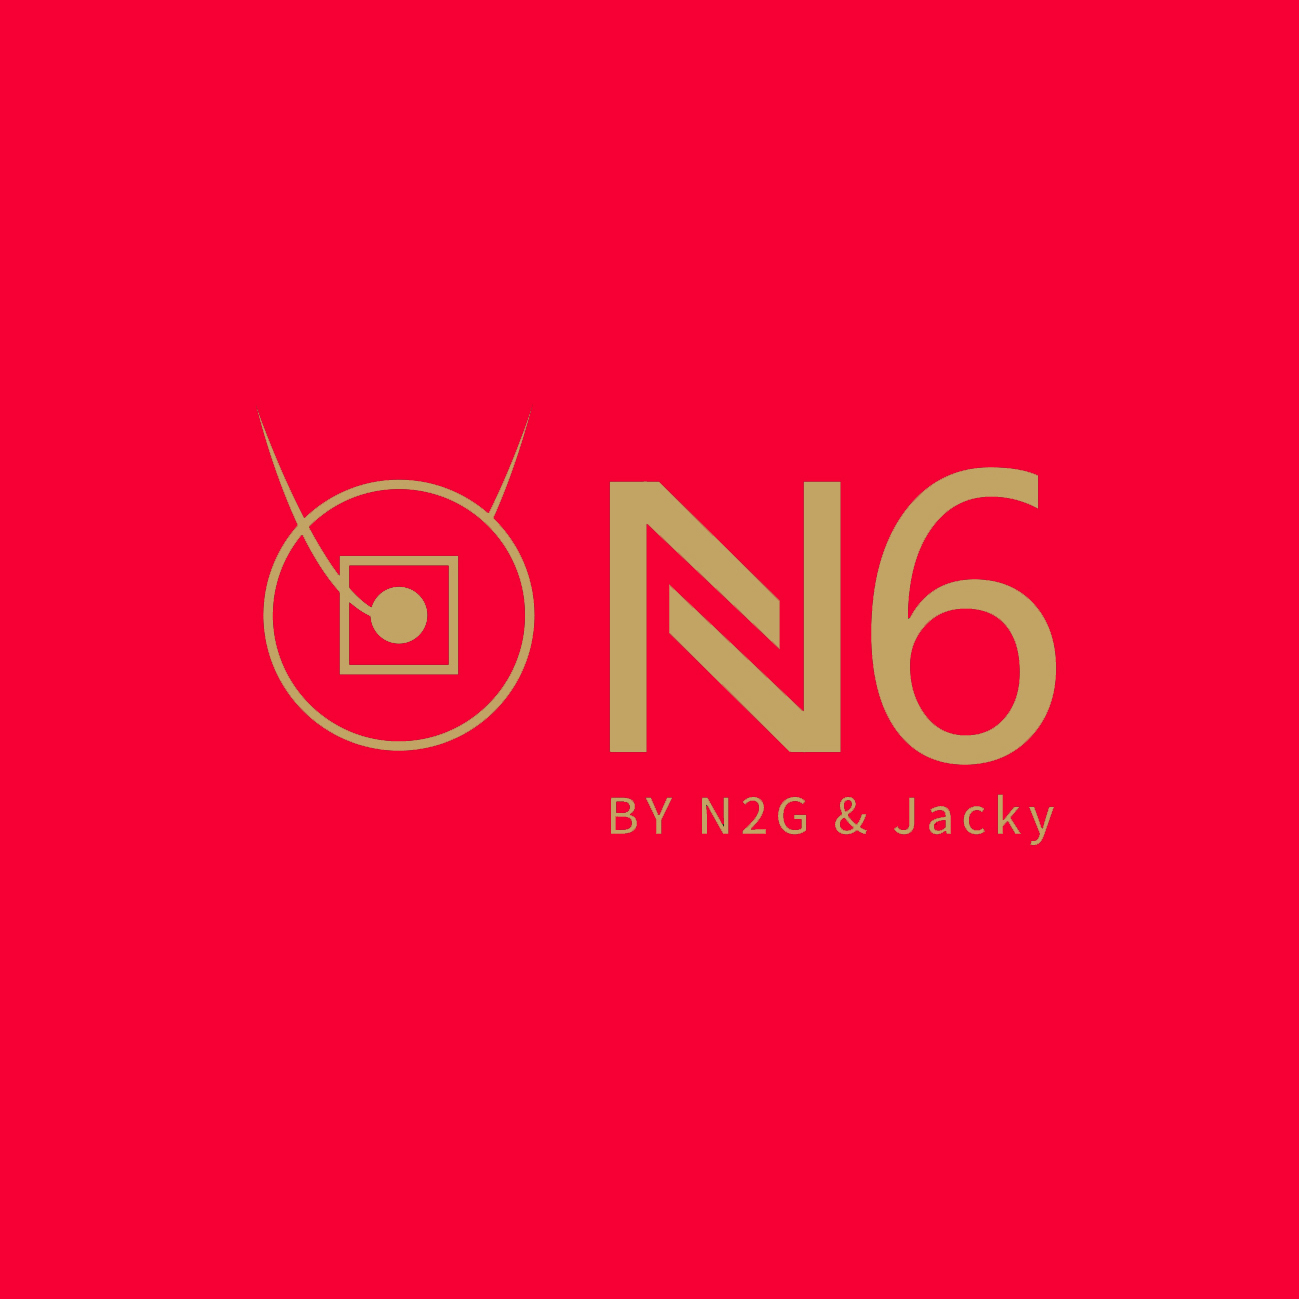 N6 by N2G-N2G Presents